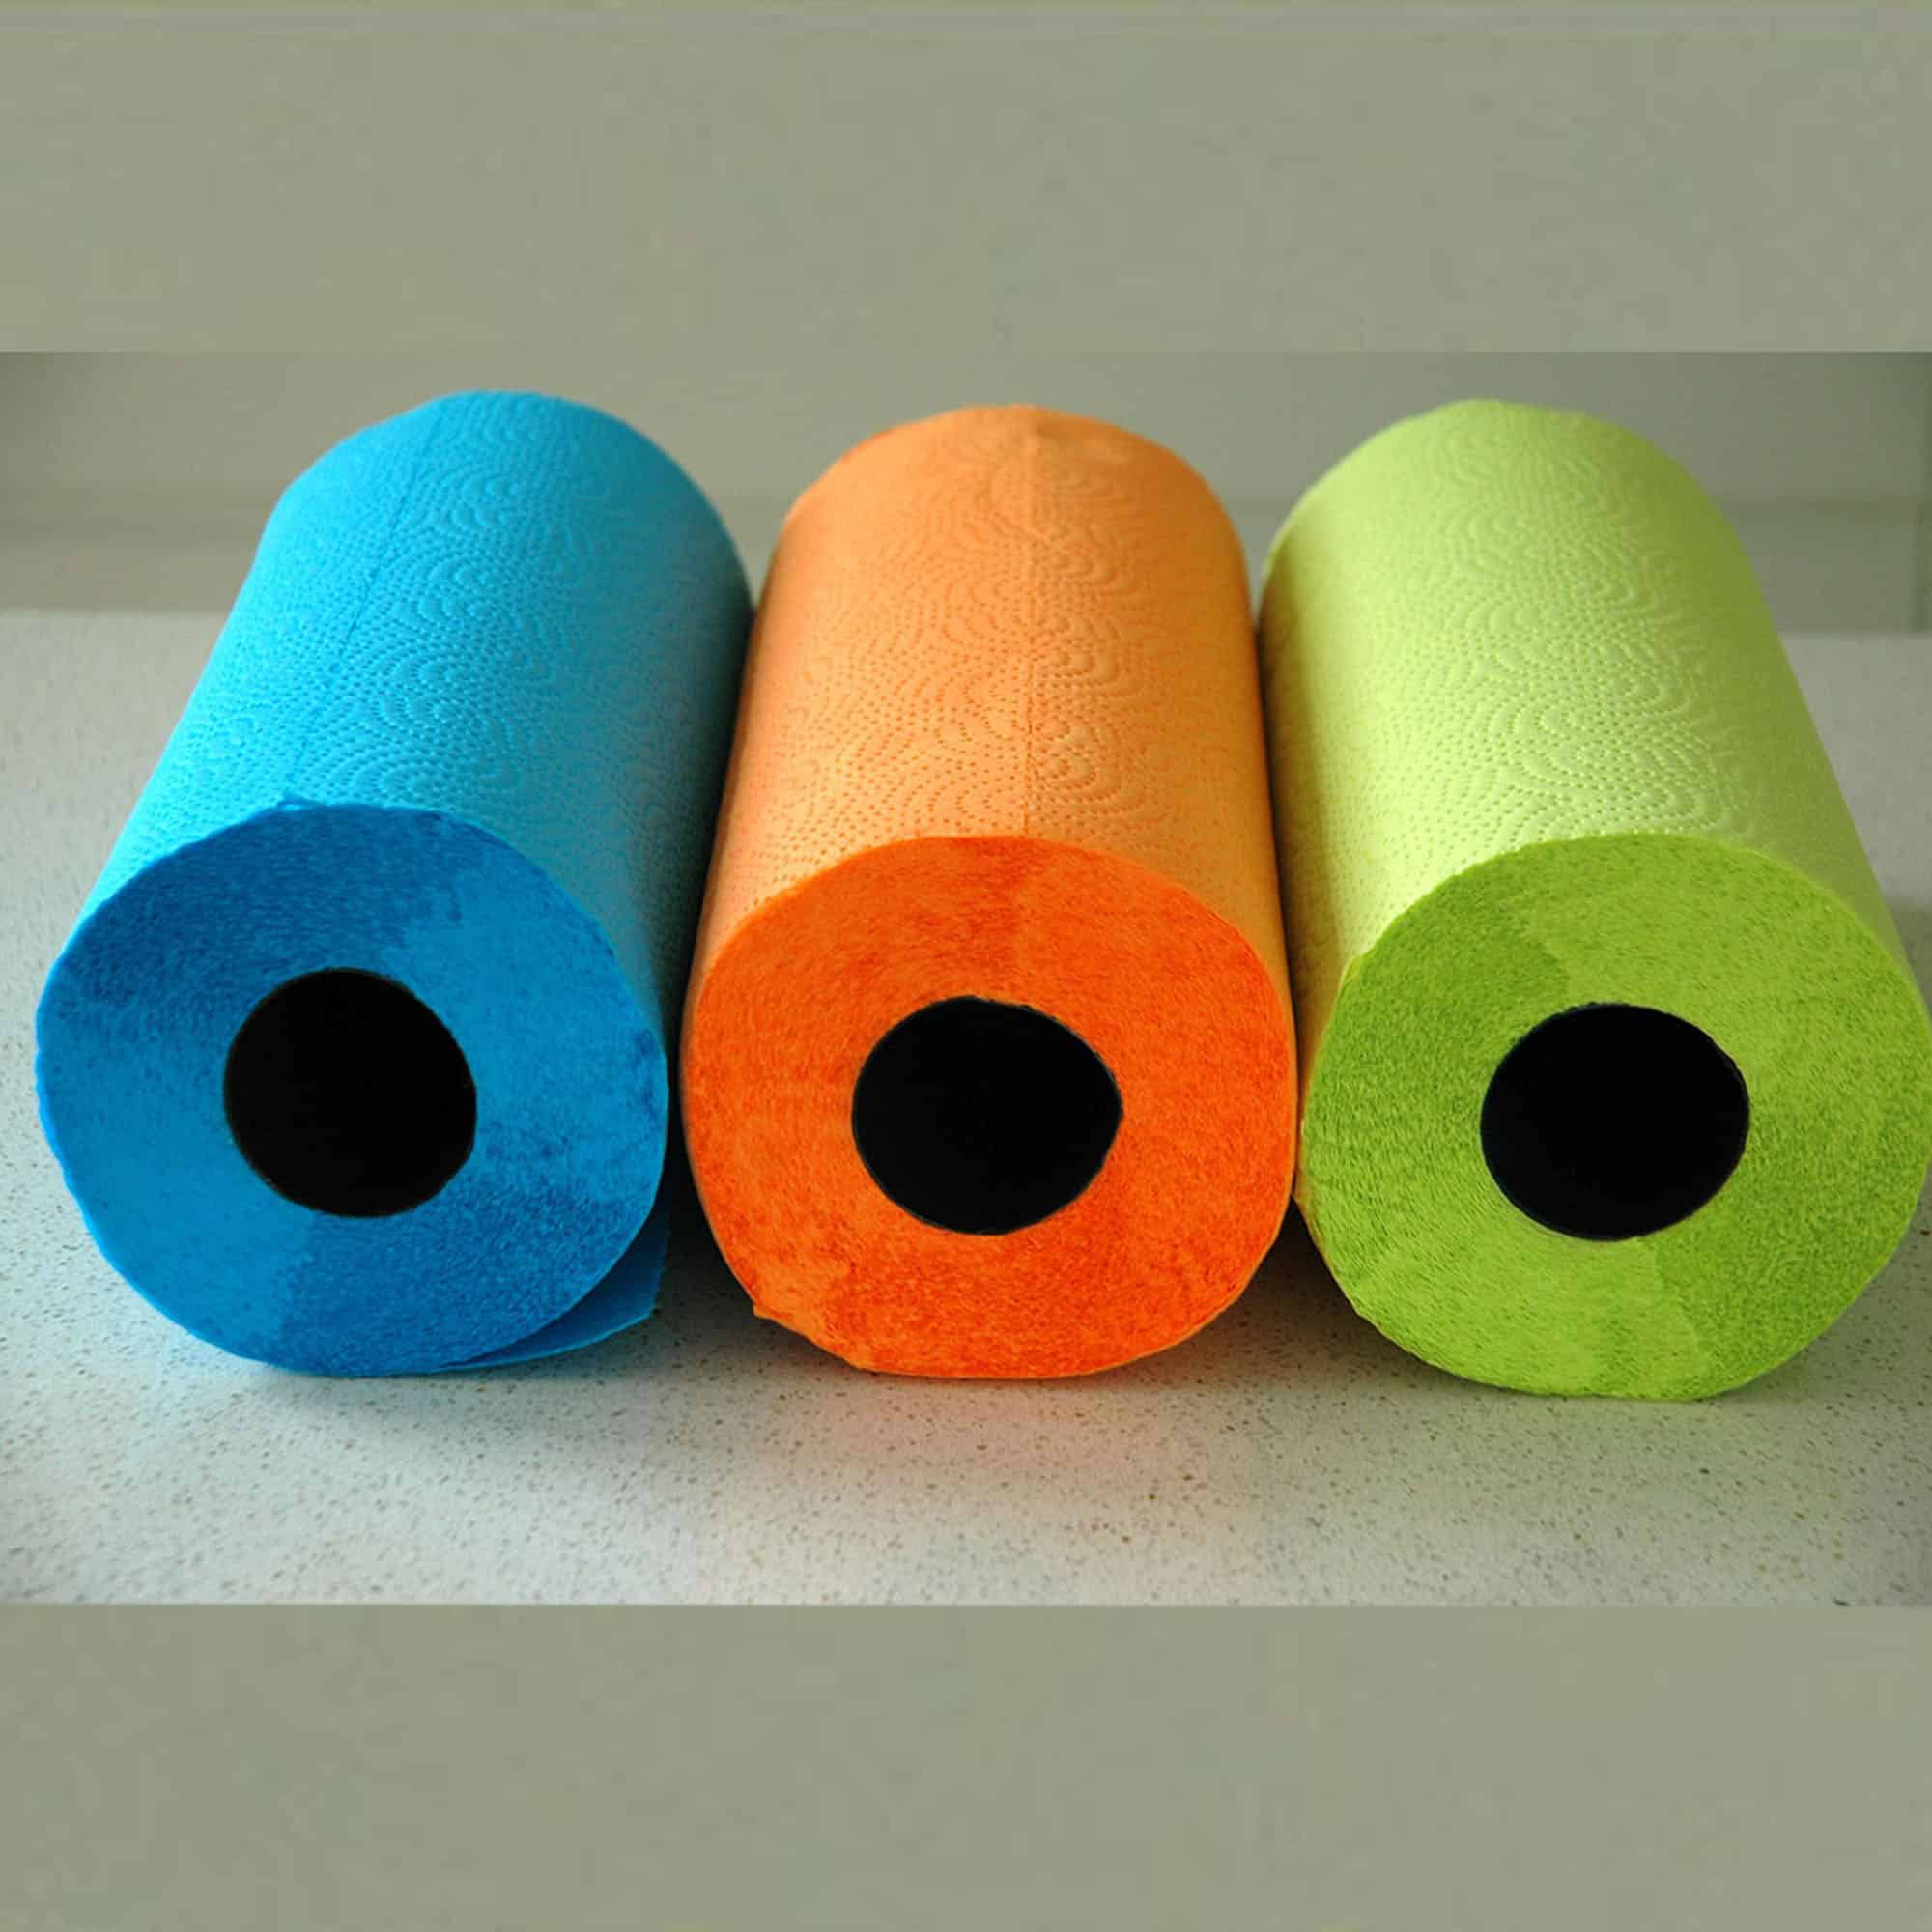 Jumbo Paper Towel Rolls